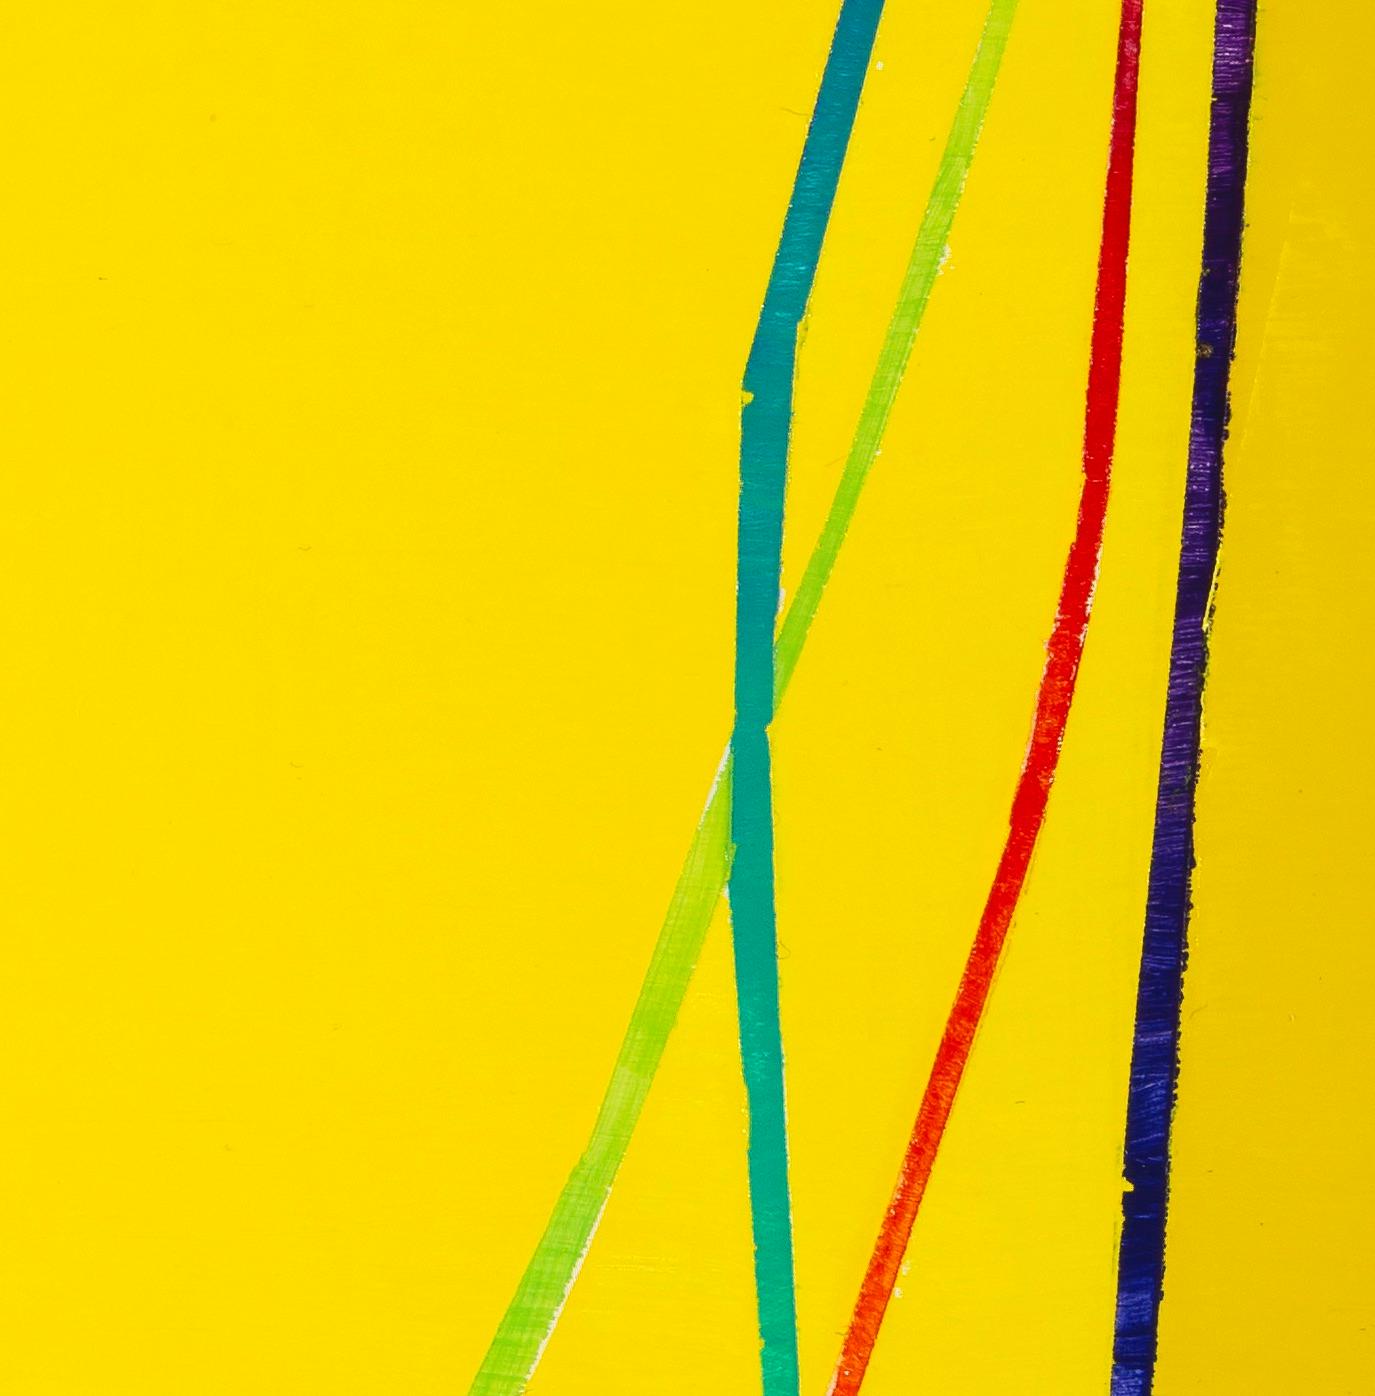 Double Catenary: Tafelbild mit mehrfarbigen Bogenlinien auf Gelb und Grün (Abstrakt), Painting, von Paula Cahill